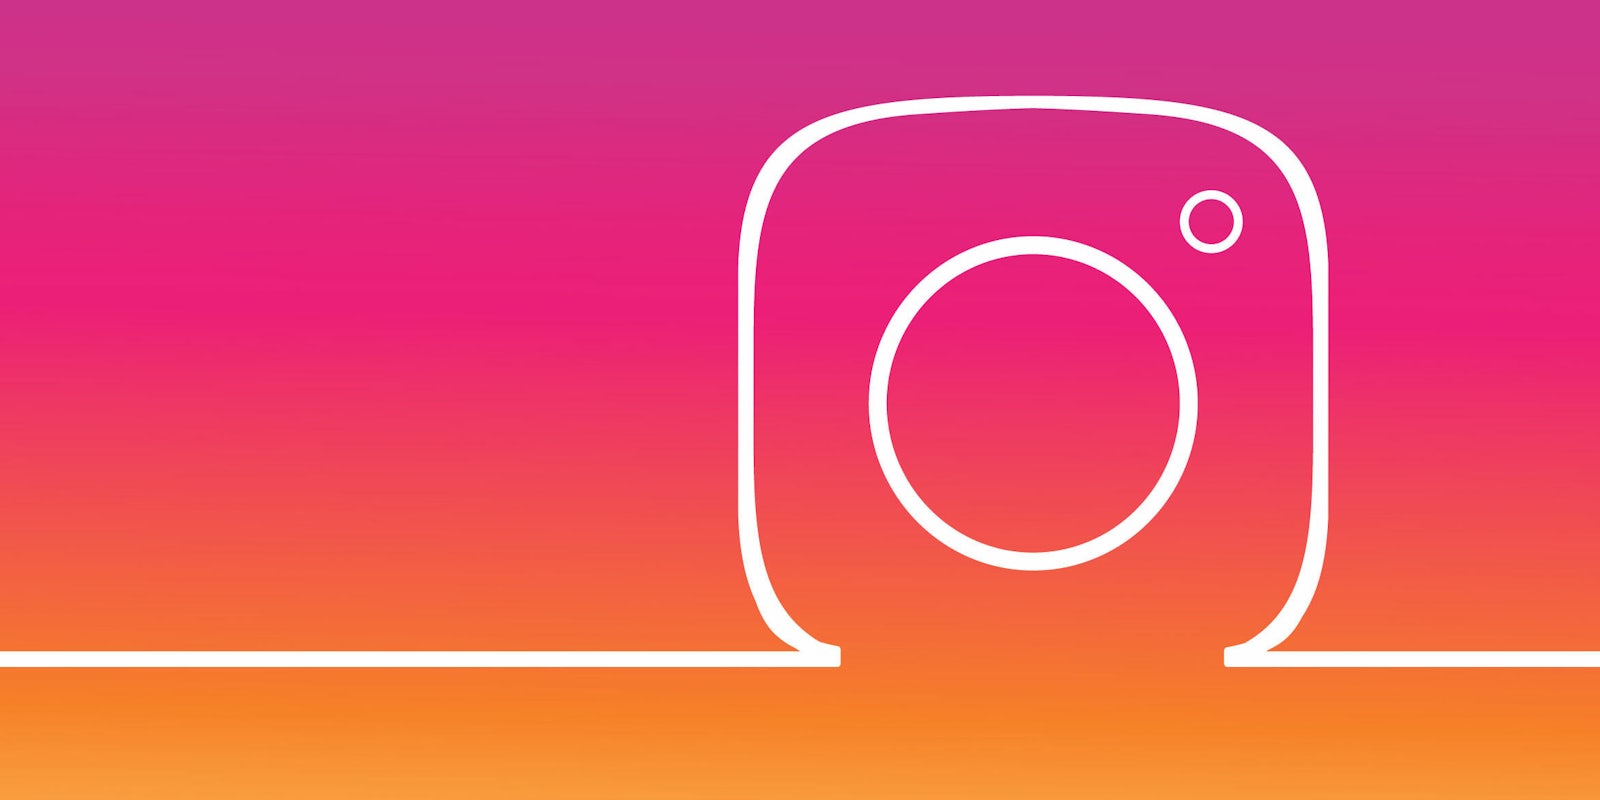 instagram logo social media